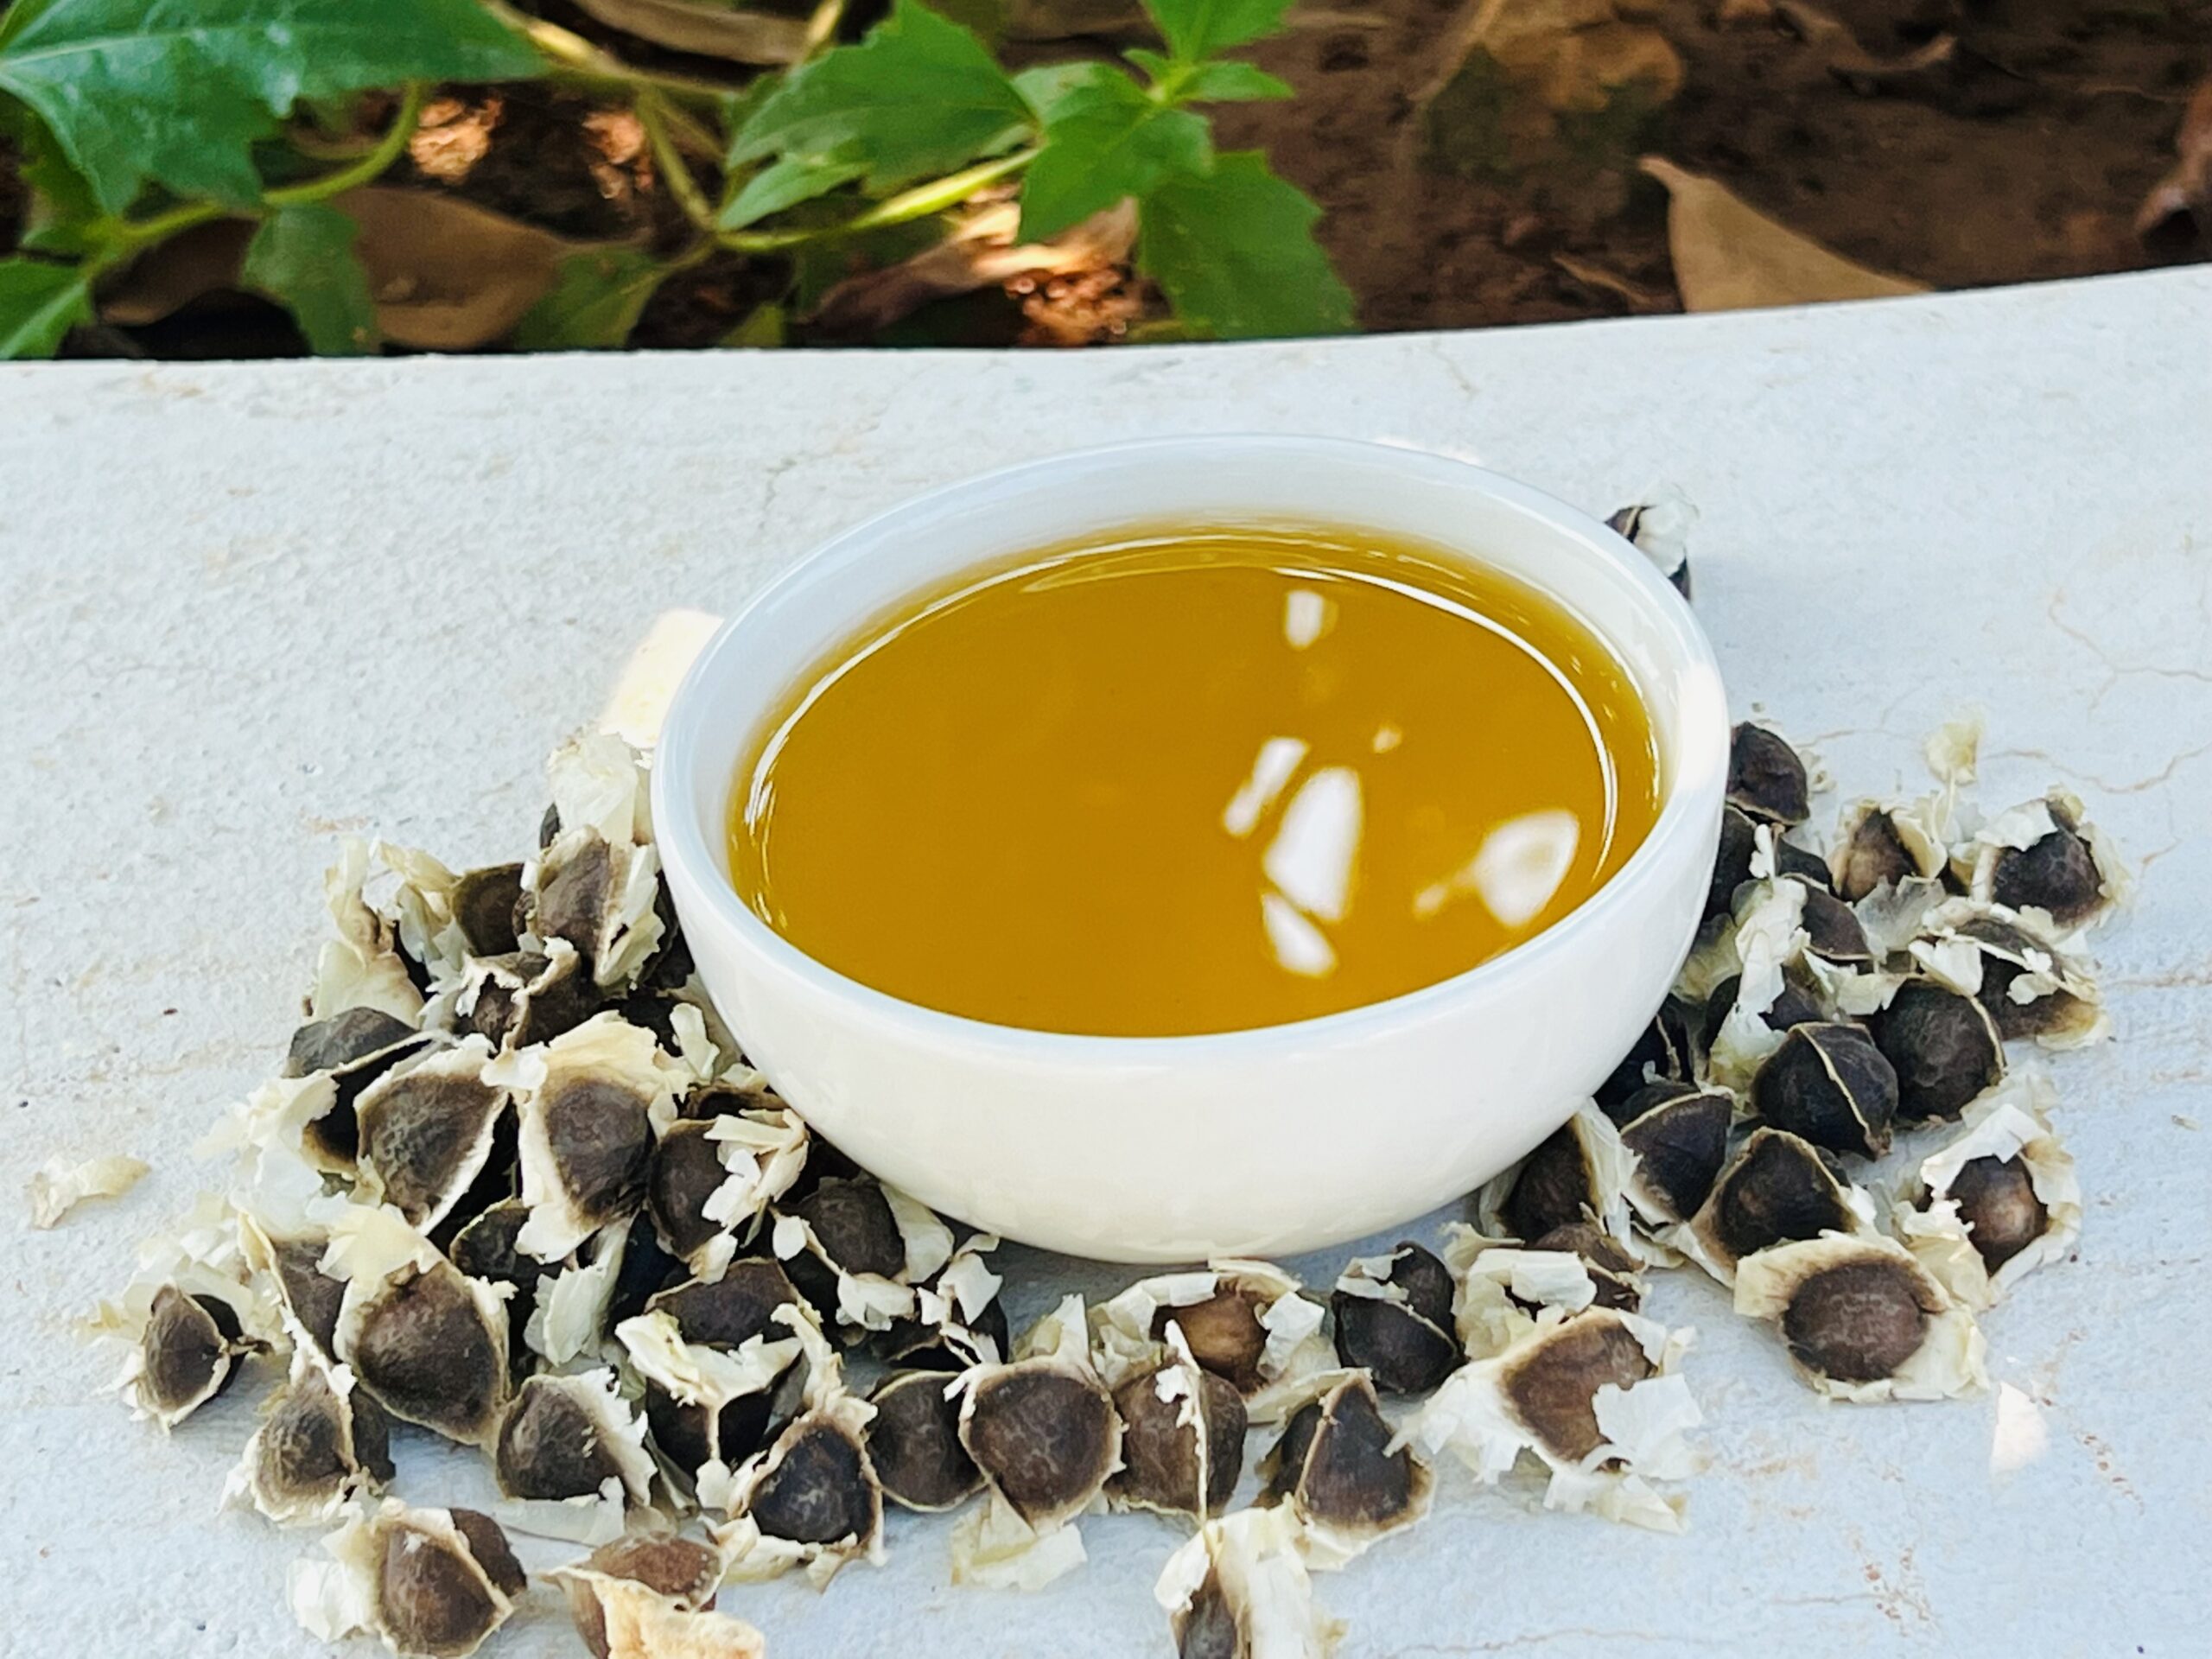 Moringa seed oil with seeds